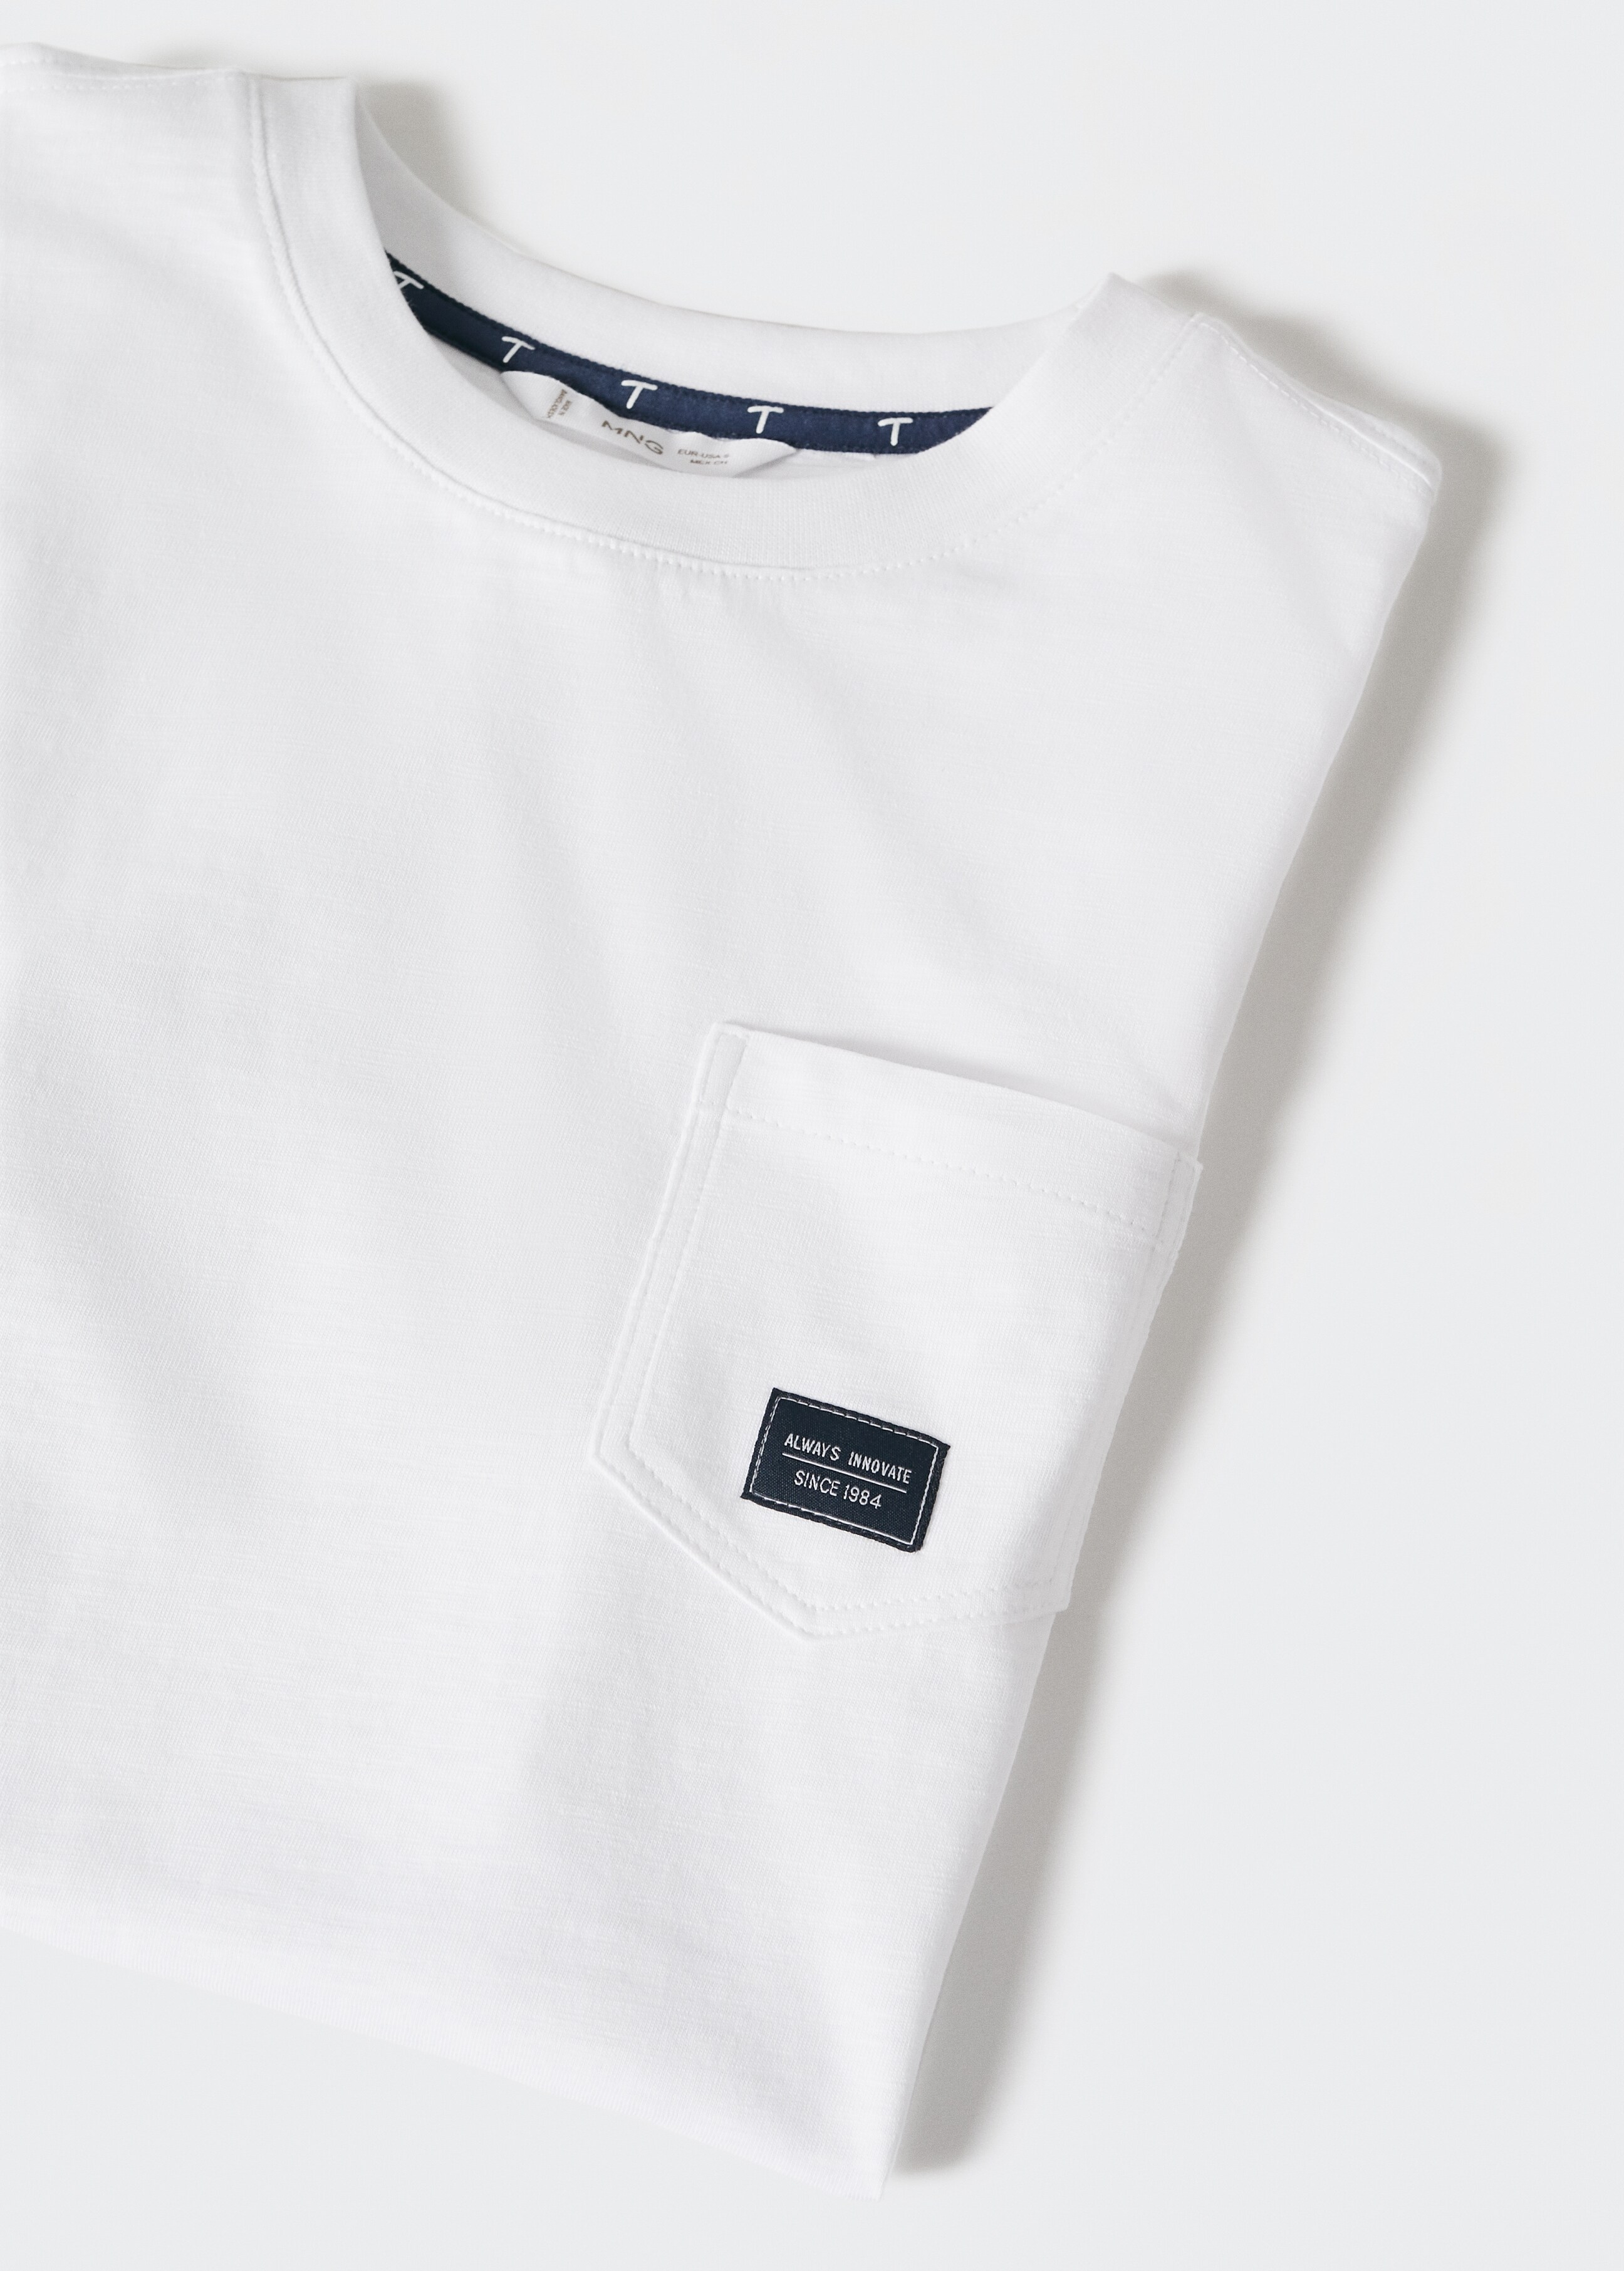 Baumwoll-T-Shirt mit Tasche - Detail des Artikels 8